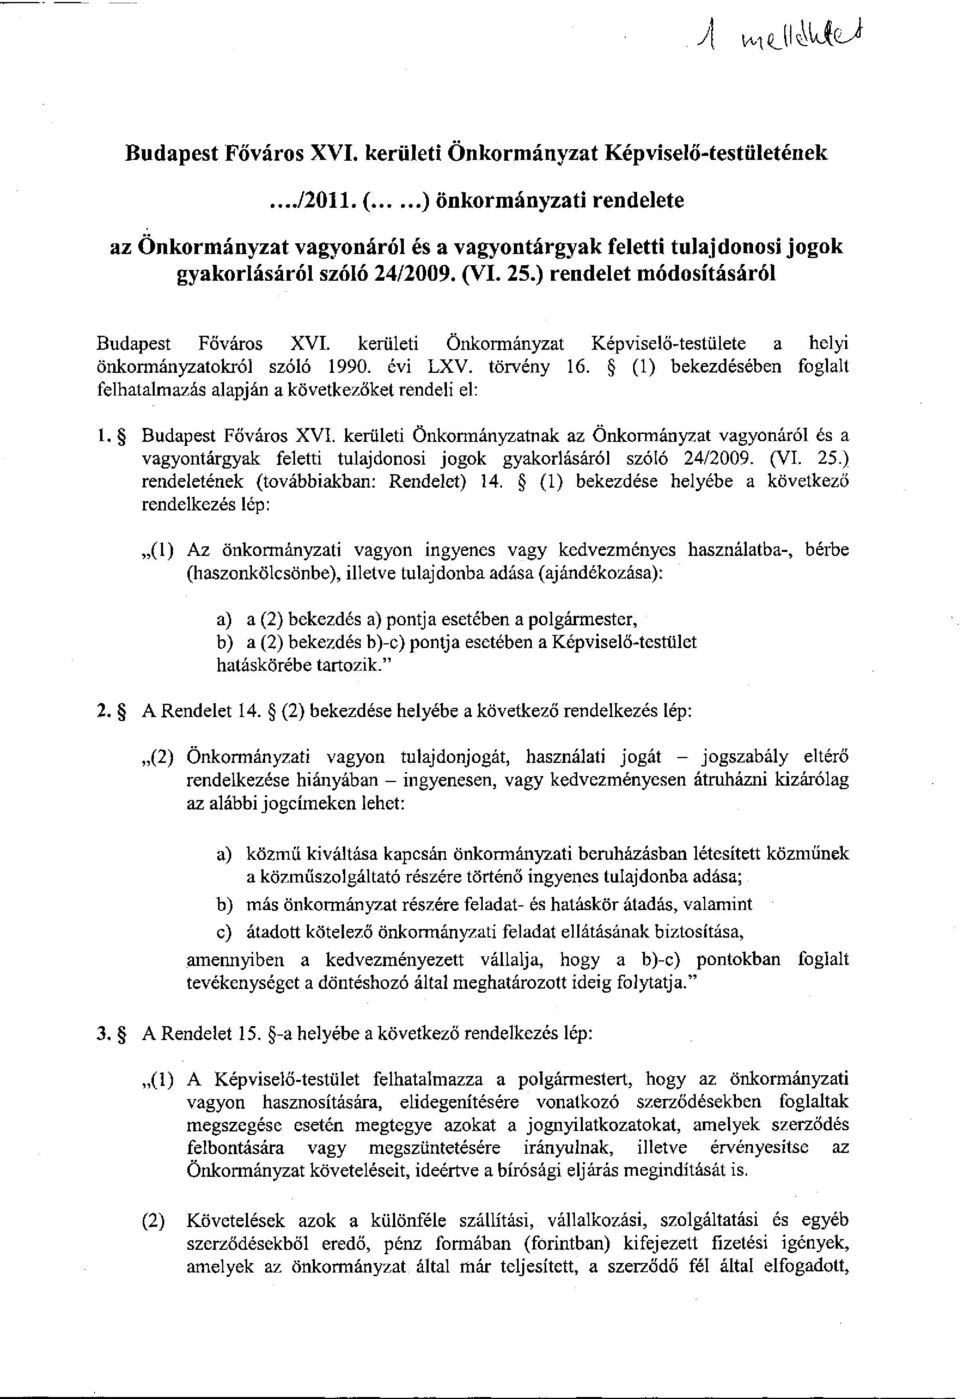 kerületi Önkormányzat Képviselő-testülete a helyi önkormányzatokról szóló 1990. évi LXV. törvény 16. (1) bekezdésében foglalt felhatalmazás alapján a következőket rendeli el: 1. Budapest Főváros XVI.